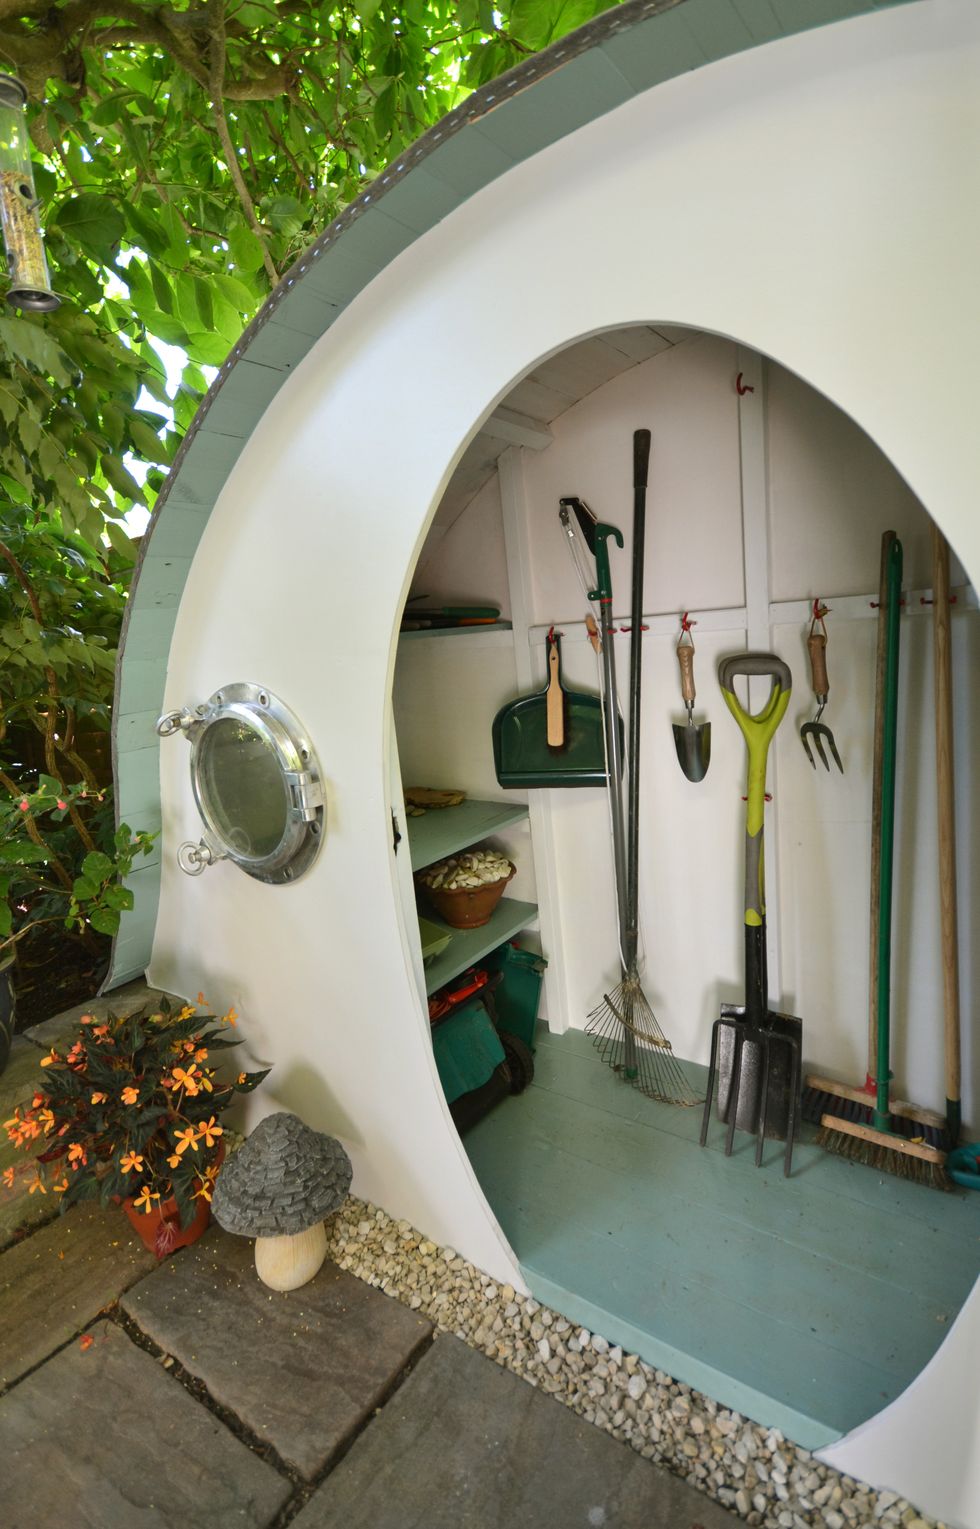 Hobbit house garden shed by Lili Giacobino